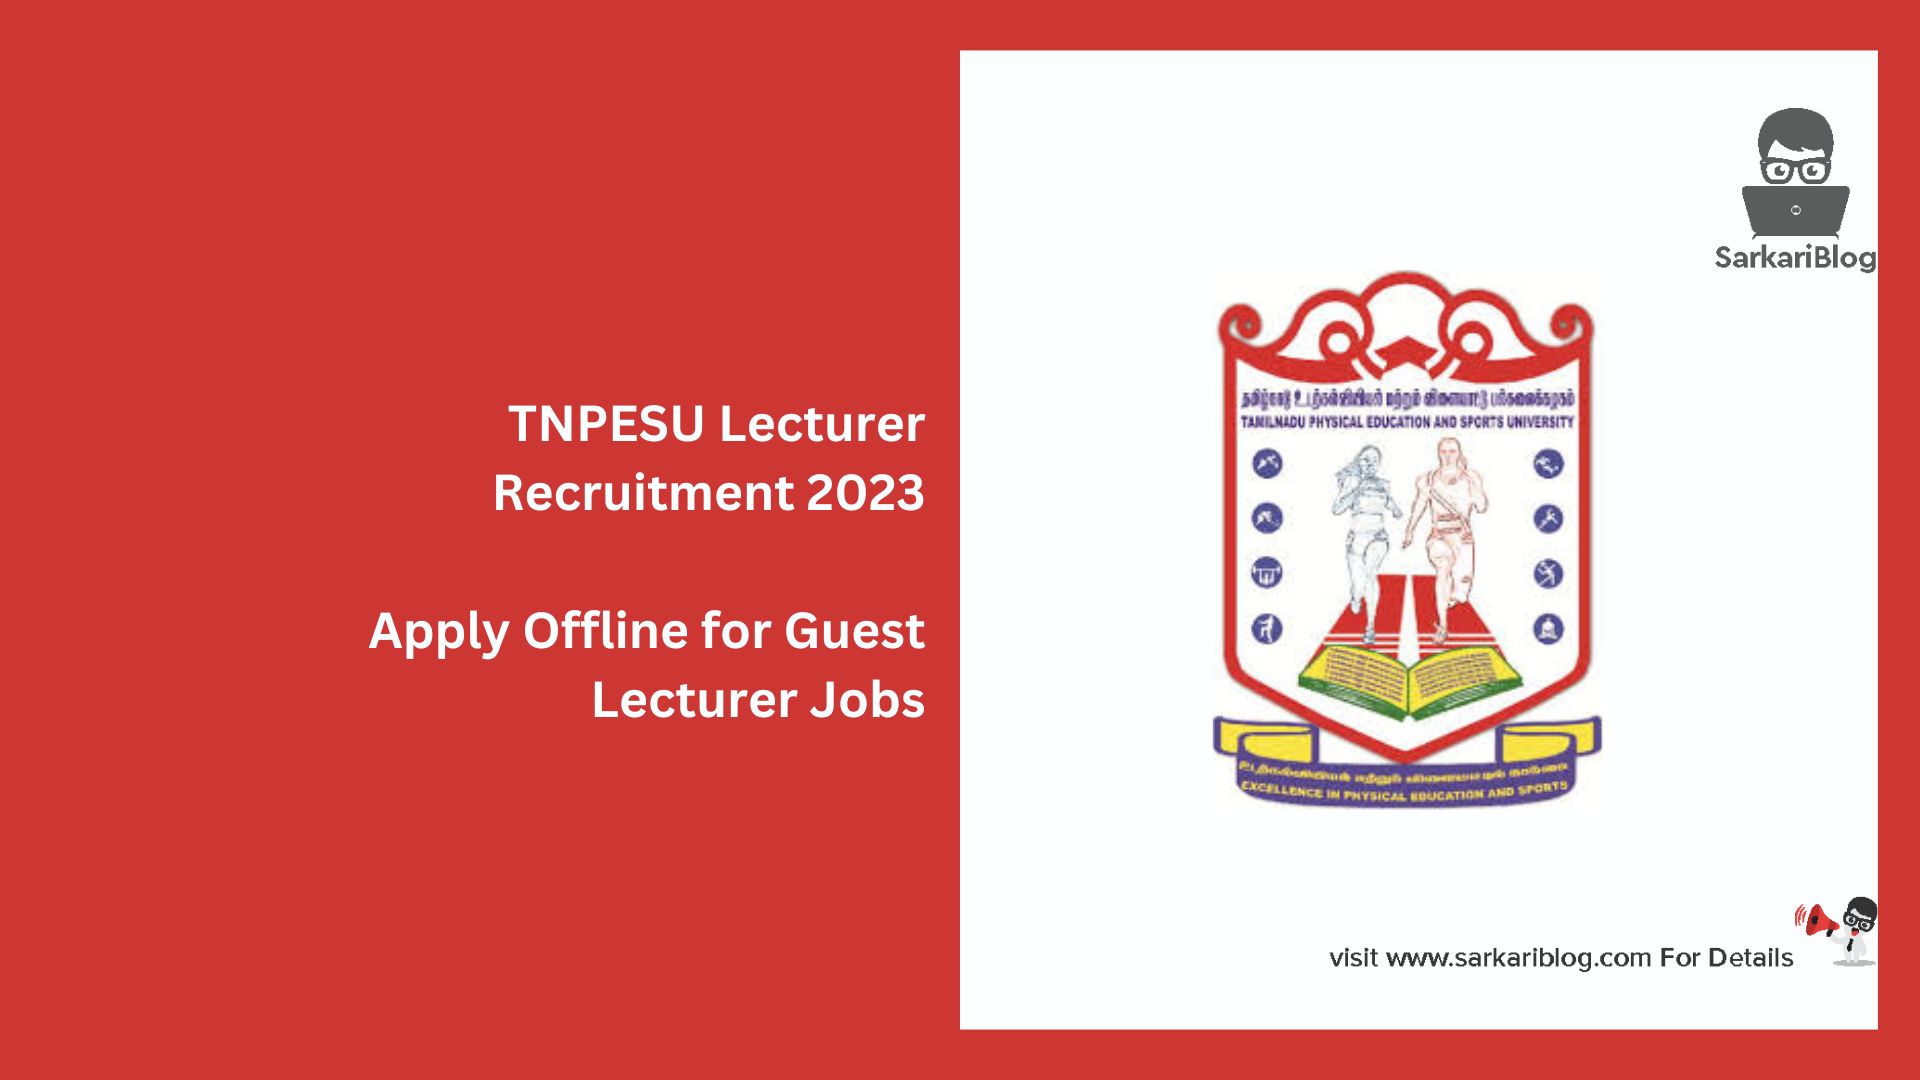 TNPESU Lecturer Recruitment 2023